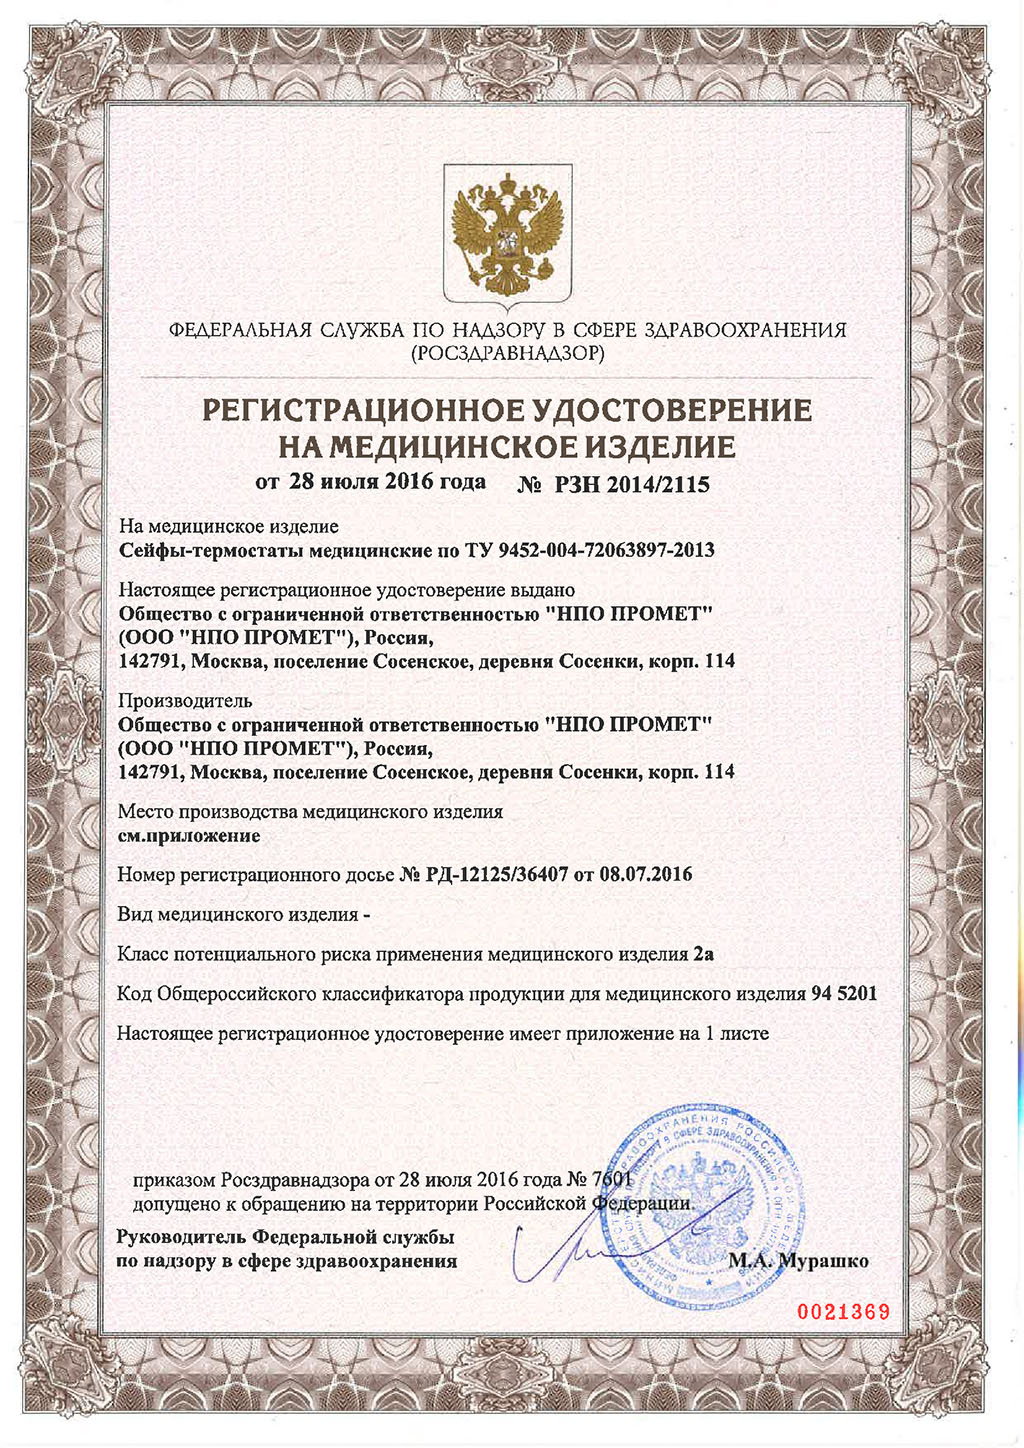 Pегистрационное-удостоверение-на-Сейфы-термостаты-1